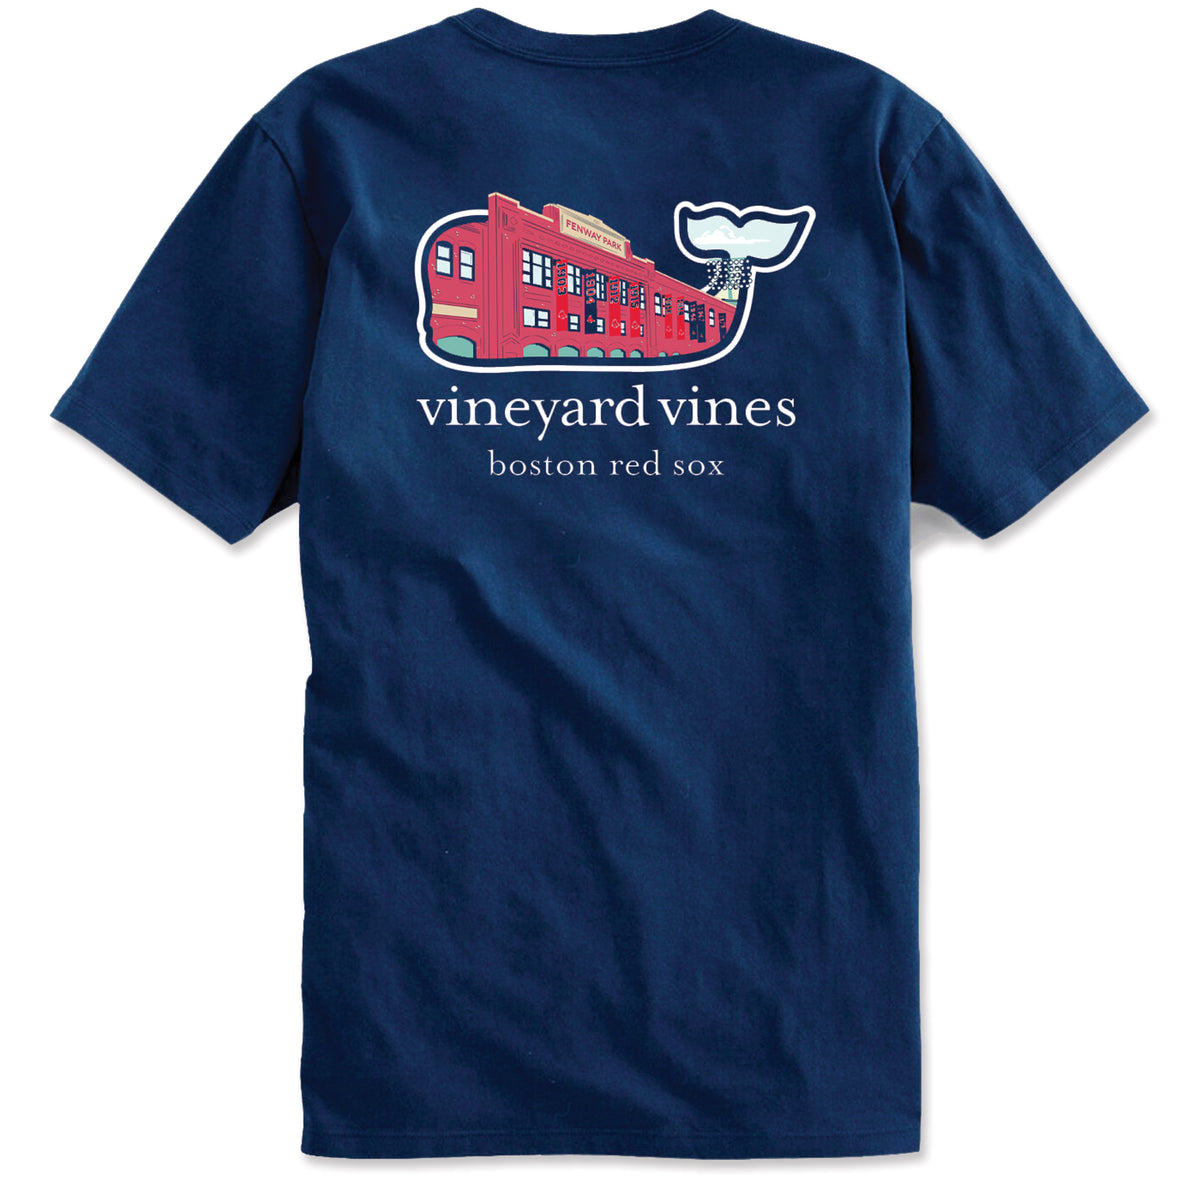 Vineyard Vines, Shirts & Tops, Nwt Vineyard Vines Boston Red Sox Tshirt